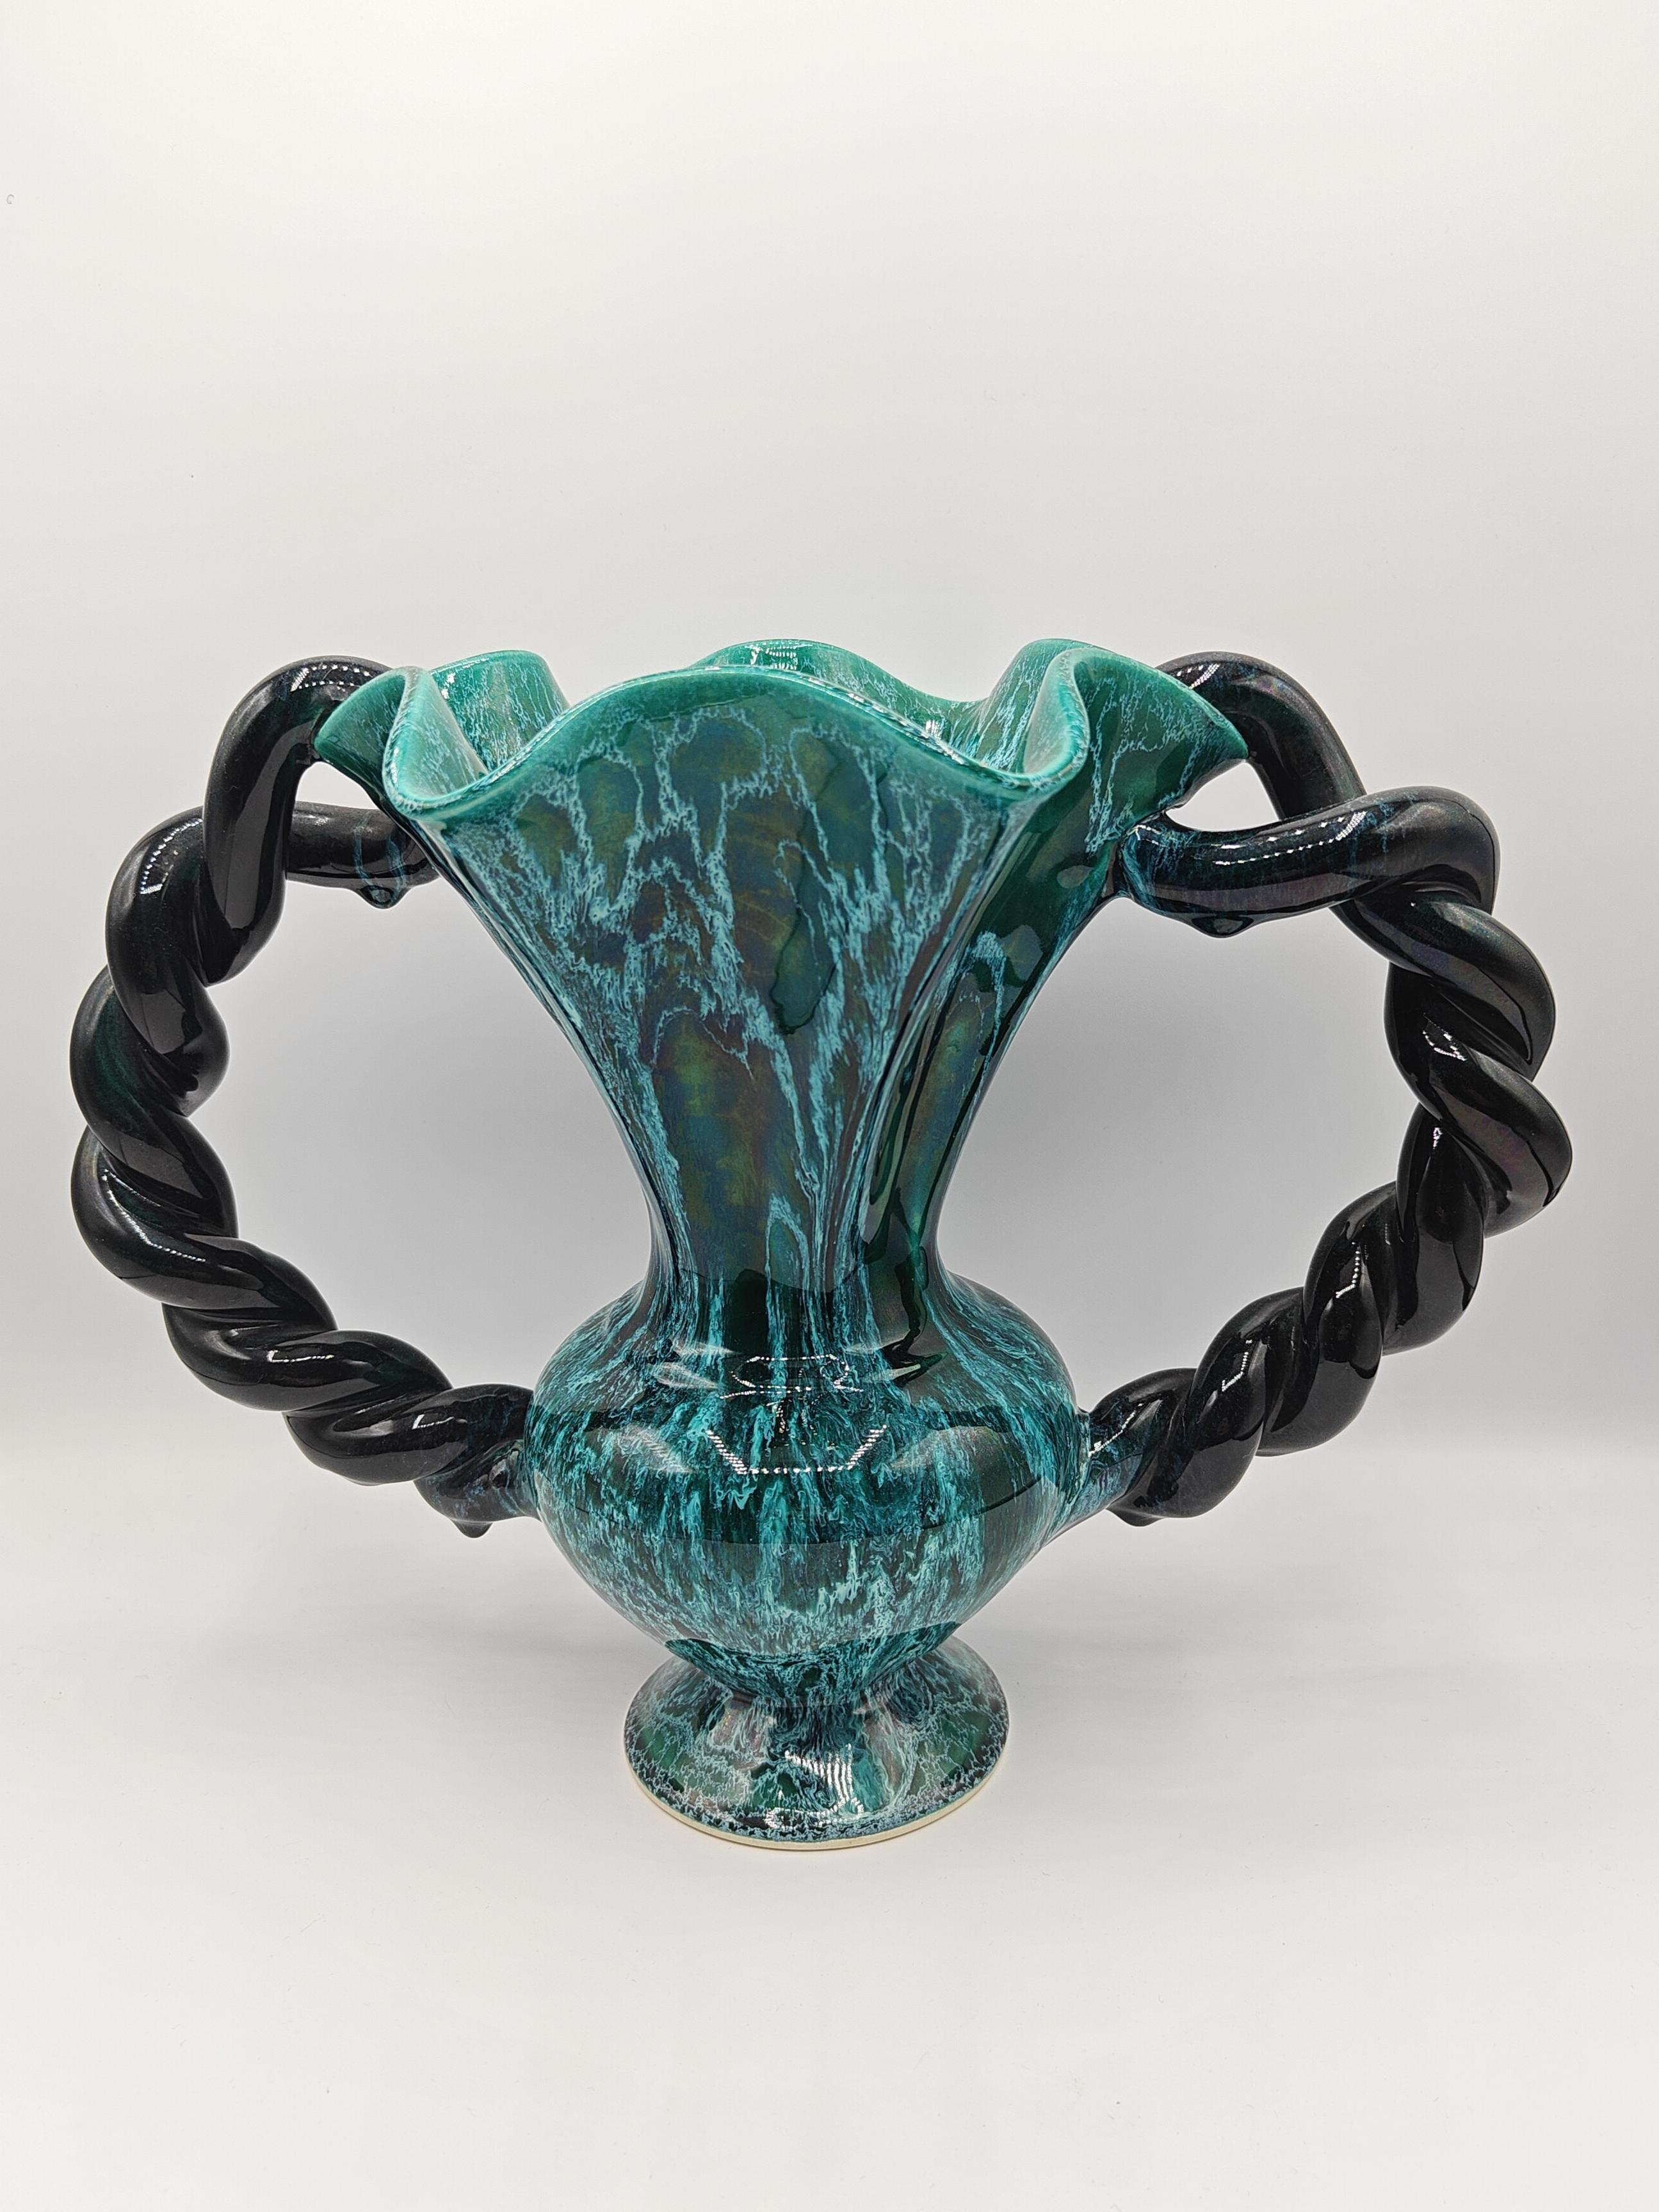 Magnifique vase des années 1950, en céramique émaillée, par Marius Giuge, céramiste à Vallauris. L'émail vert malachite avec ces dégradés blancs ou noirs est très reconnaissable dans l'œuvre de Marius Giuge. 

Ce vase est signé par un cachet en